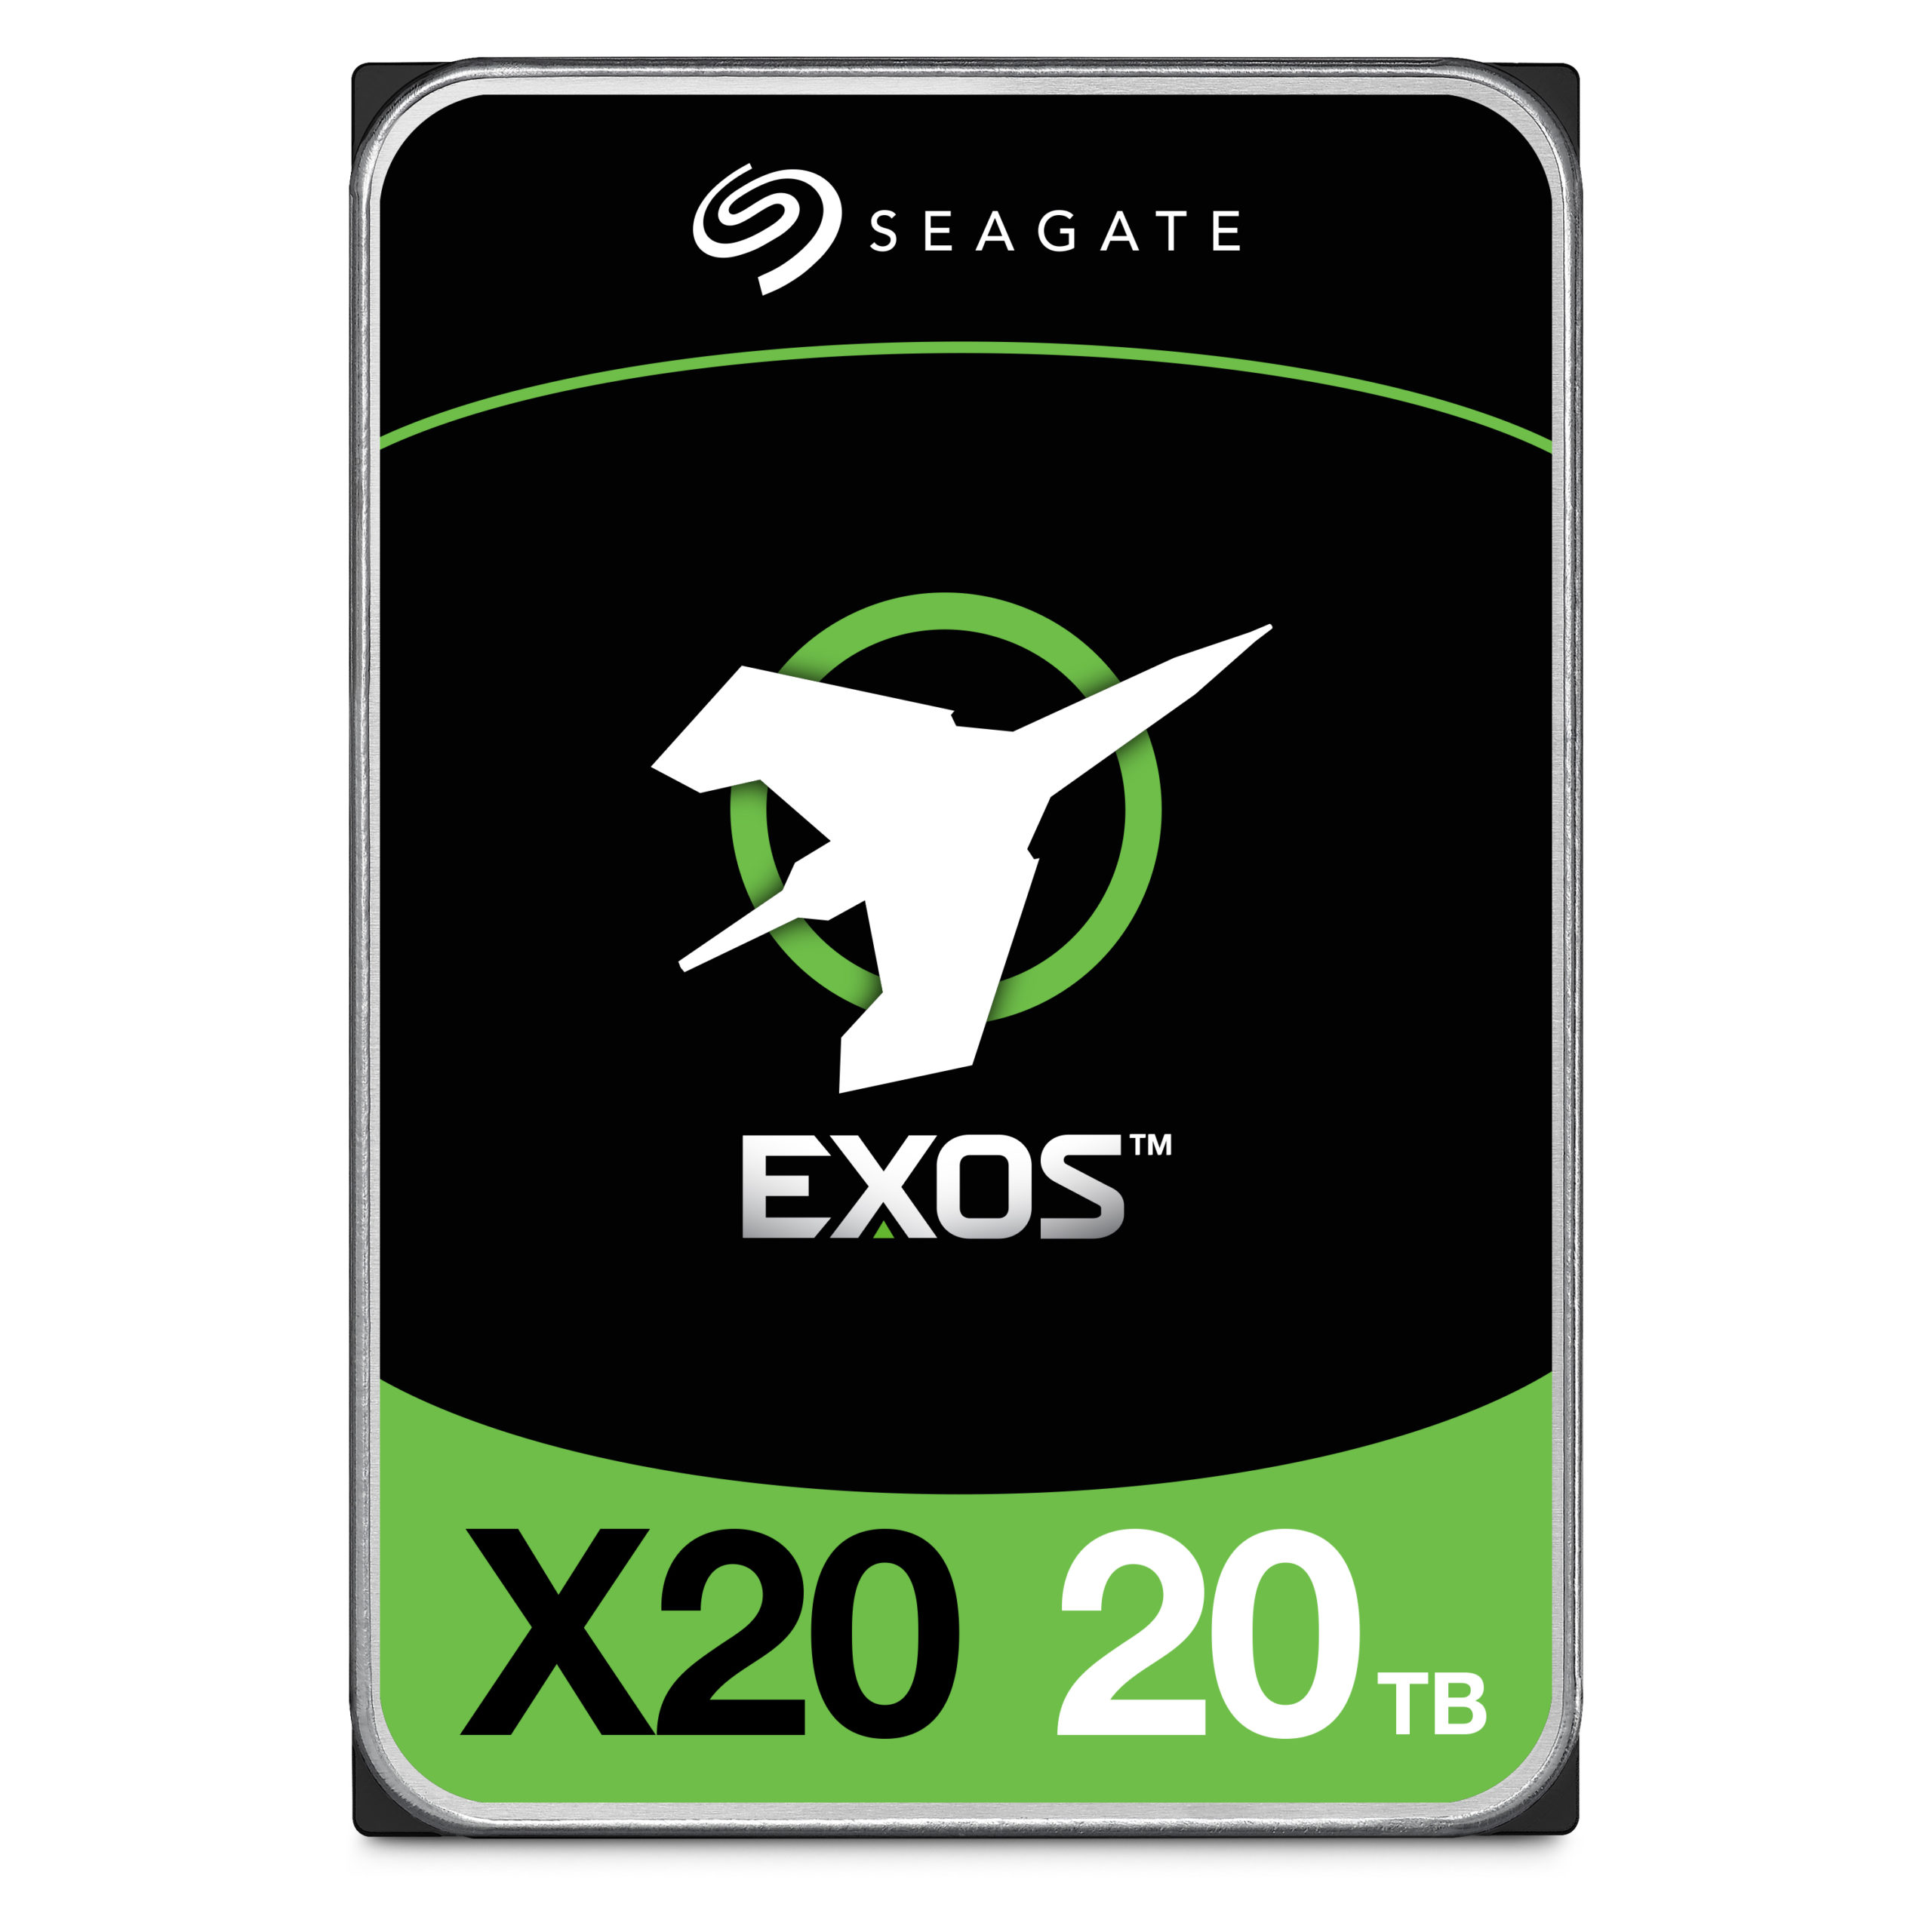 Seagate amplía los envíos de discos duros de 20 TB en respuesta al crecimiento masivo de datos